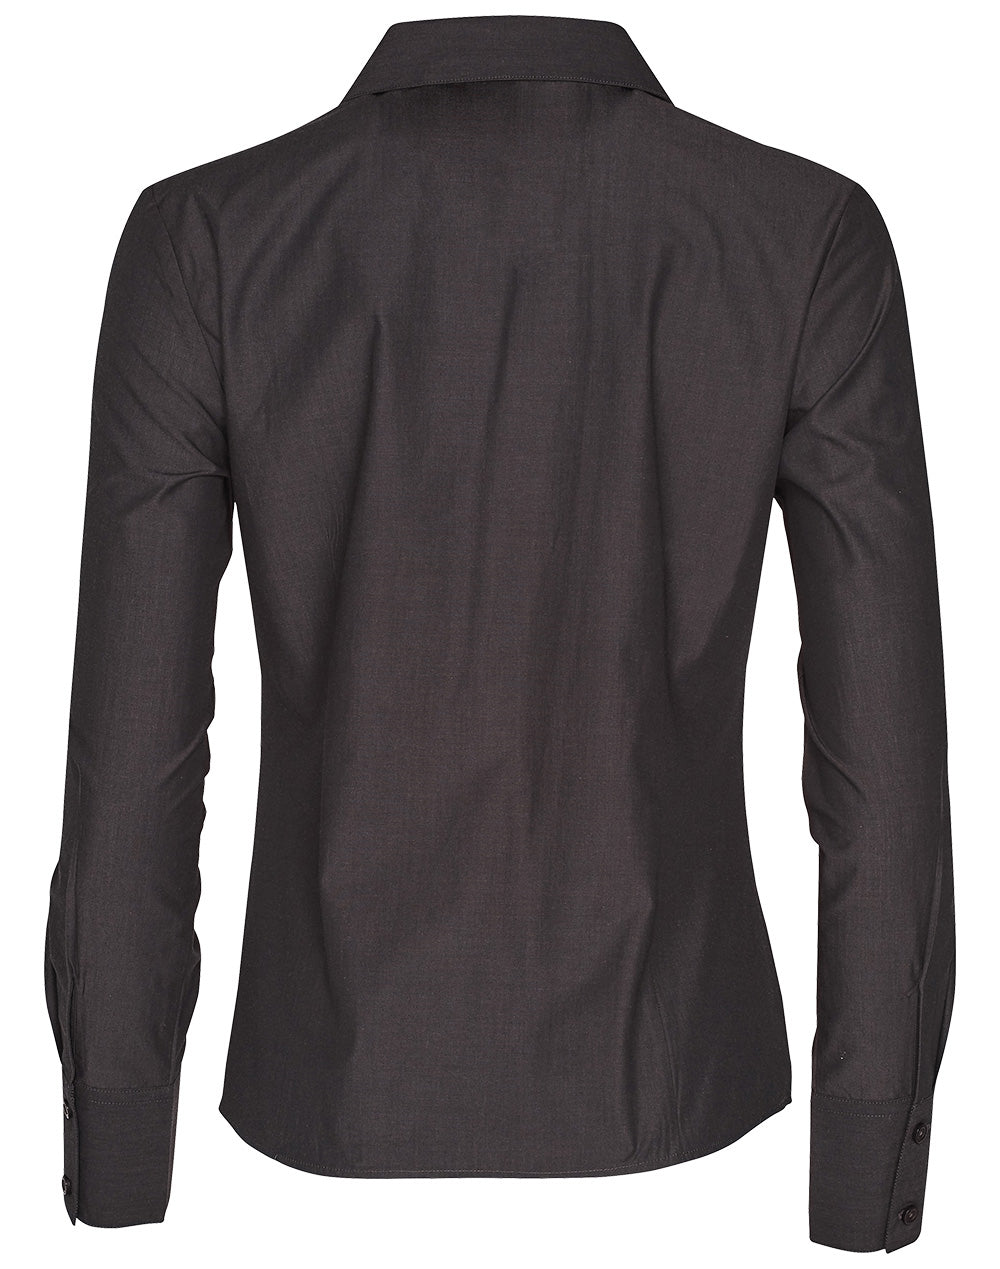 Benchmark M8002 Women's Nano Tech Long Sleeve Shirt